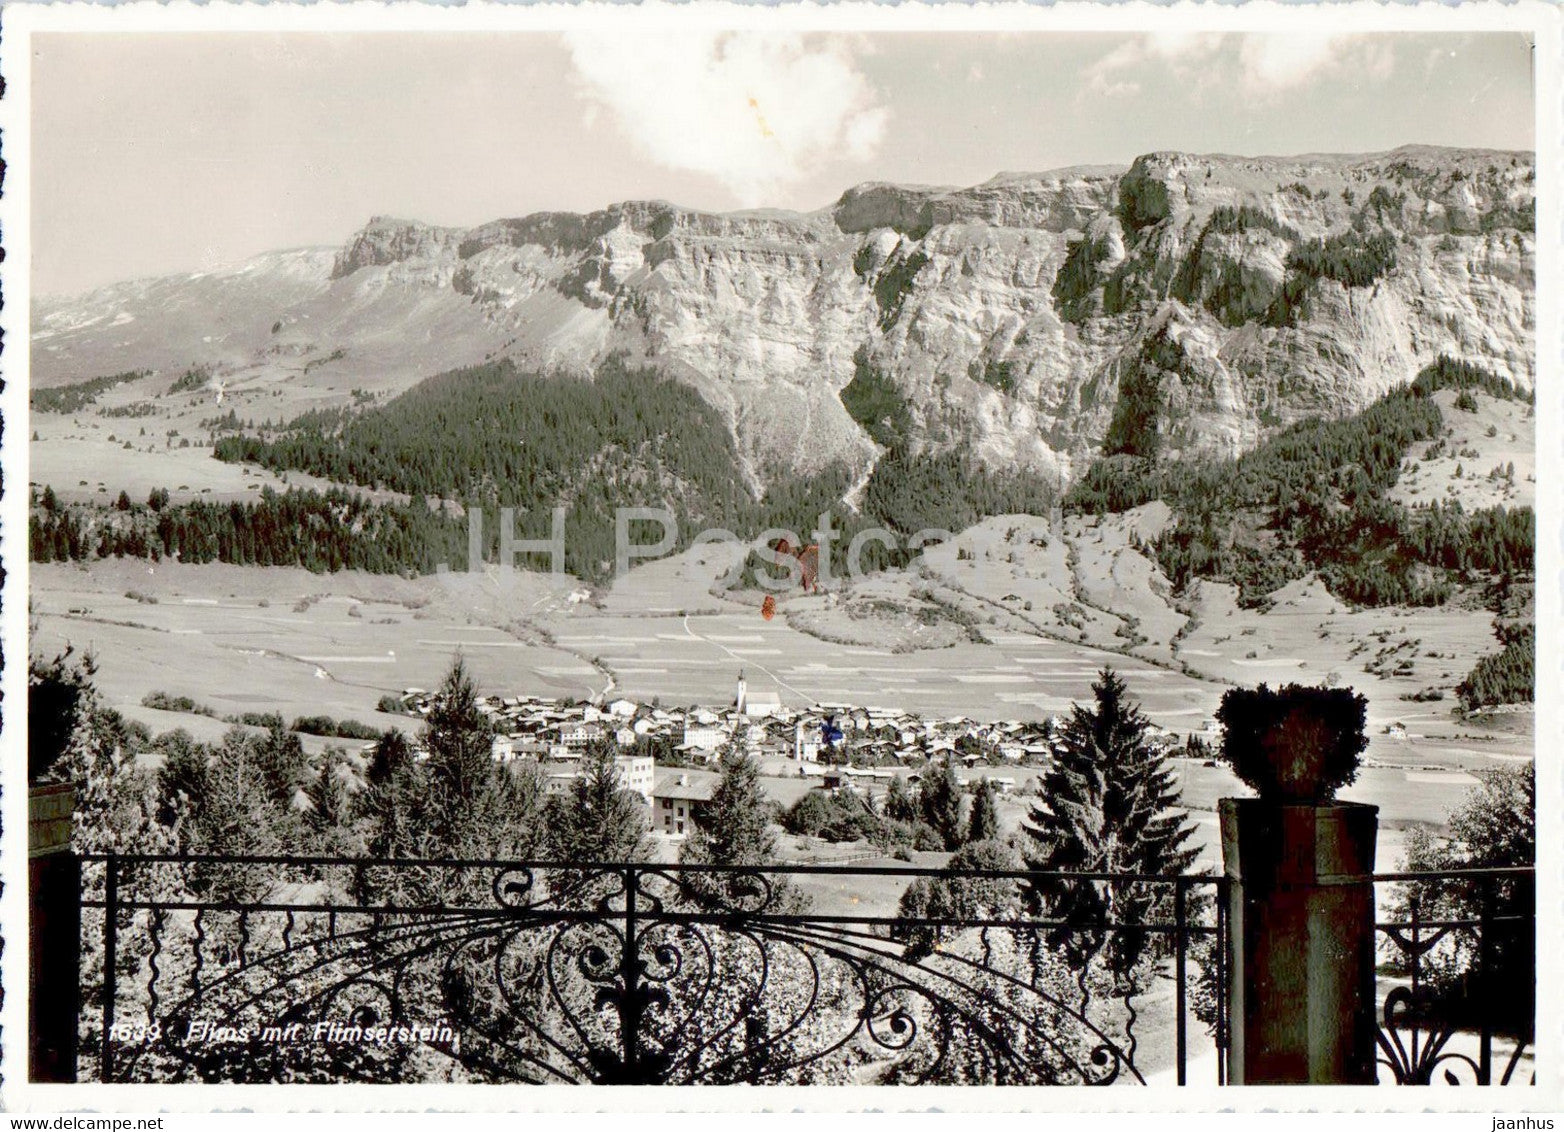 Flims mit Flimserstein - 1639 - old postcard - 1940 - Switzerland - used - JH Postcards